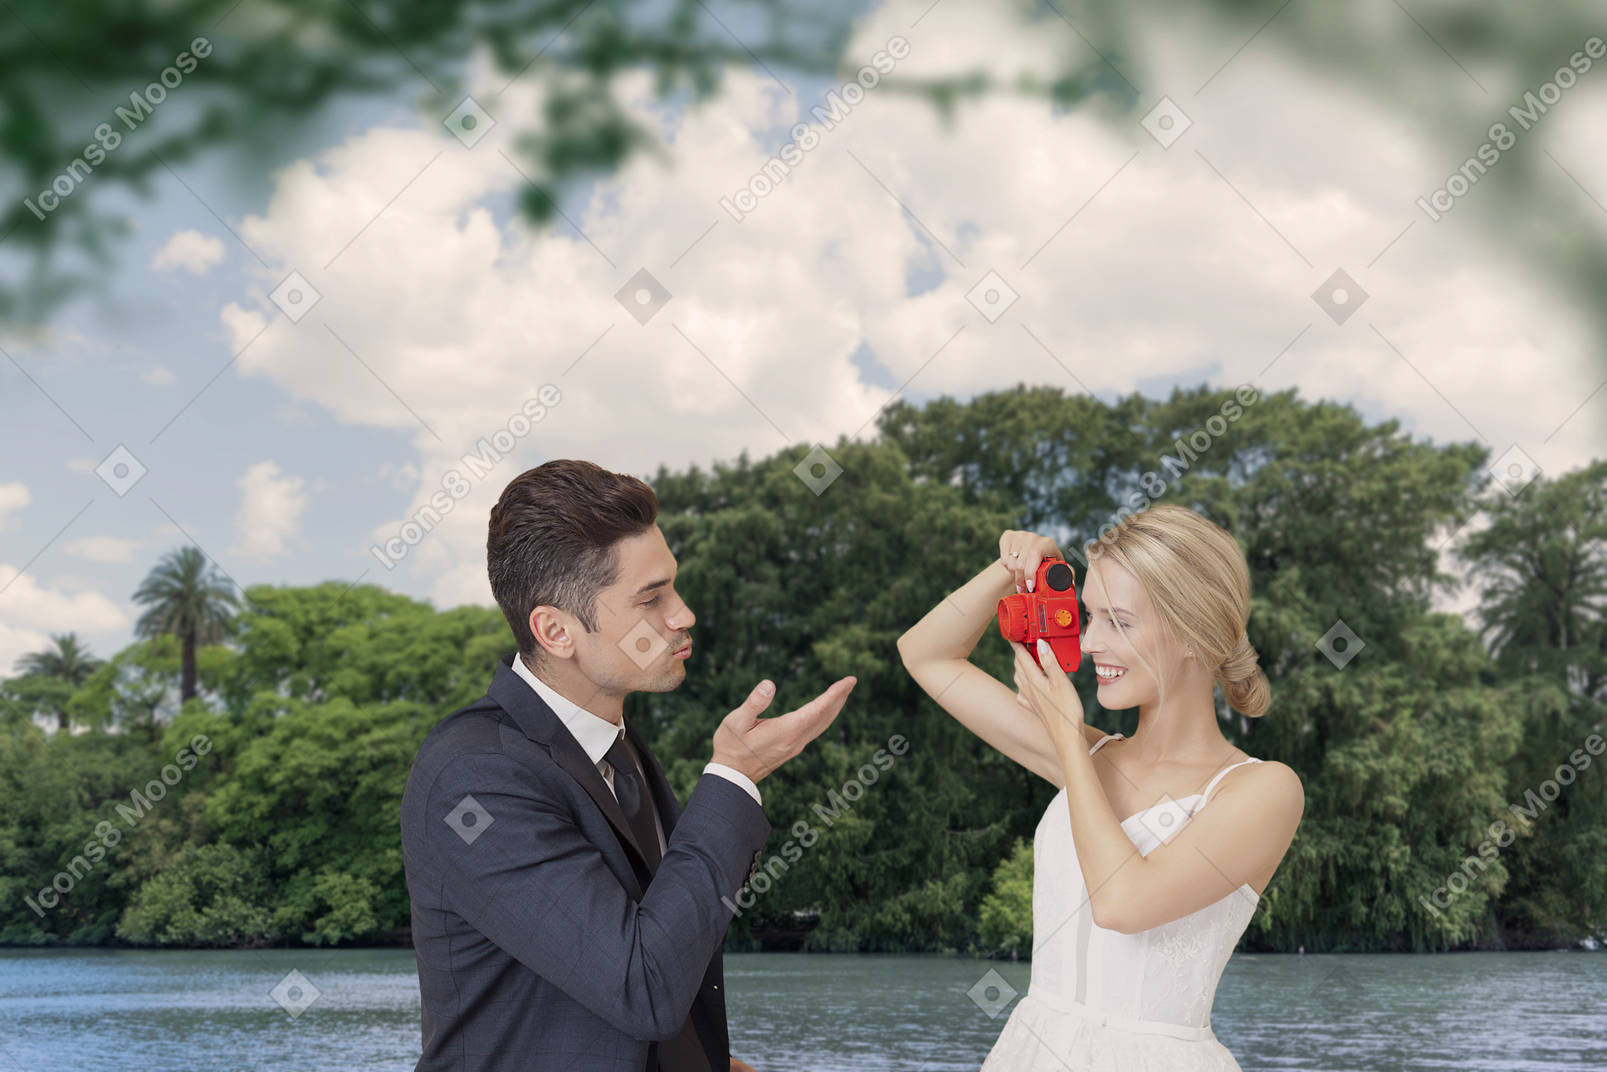 Una sposa felice che scatta una foto del suo sposo che le manda un bacio sotto gli alberi verdi vicino al fiume